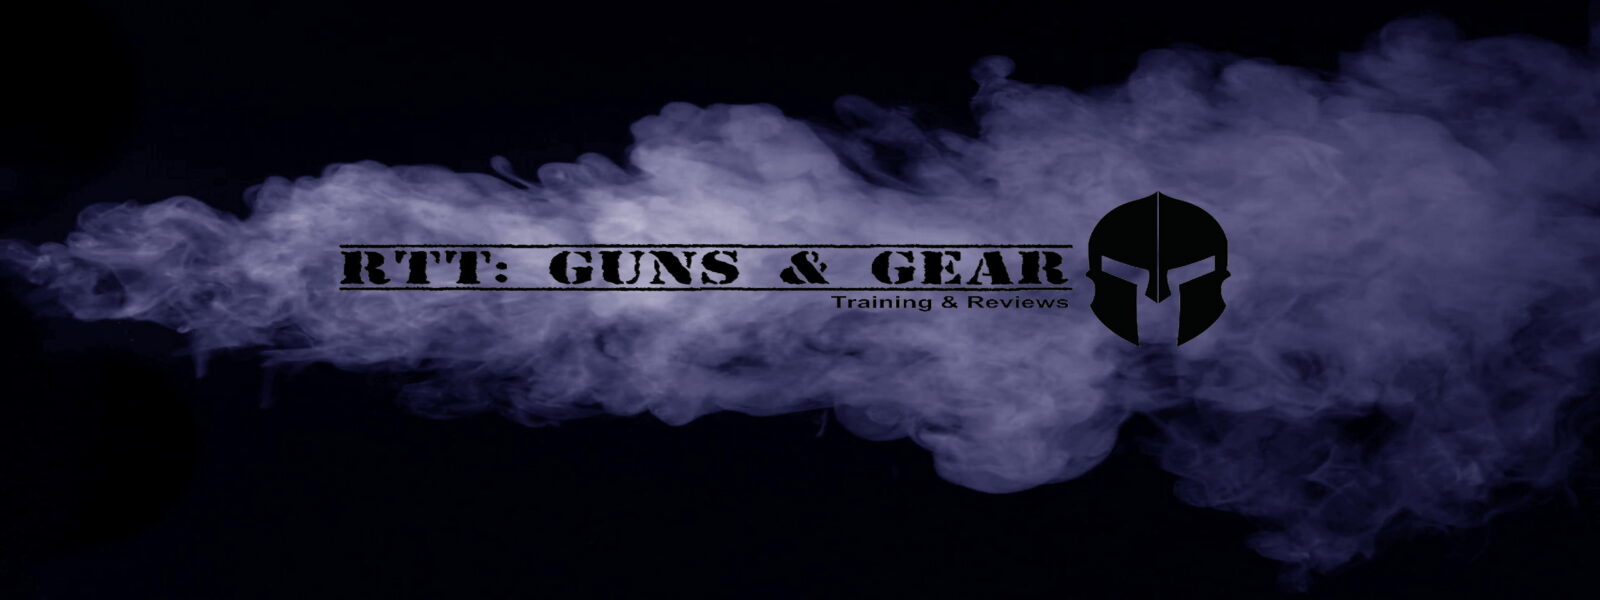 RTT: Guns & Gear